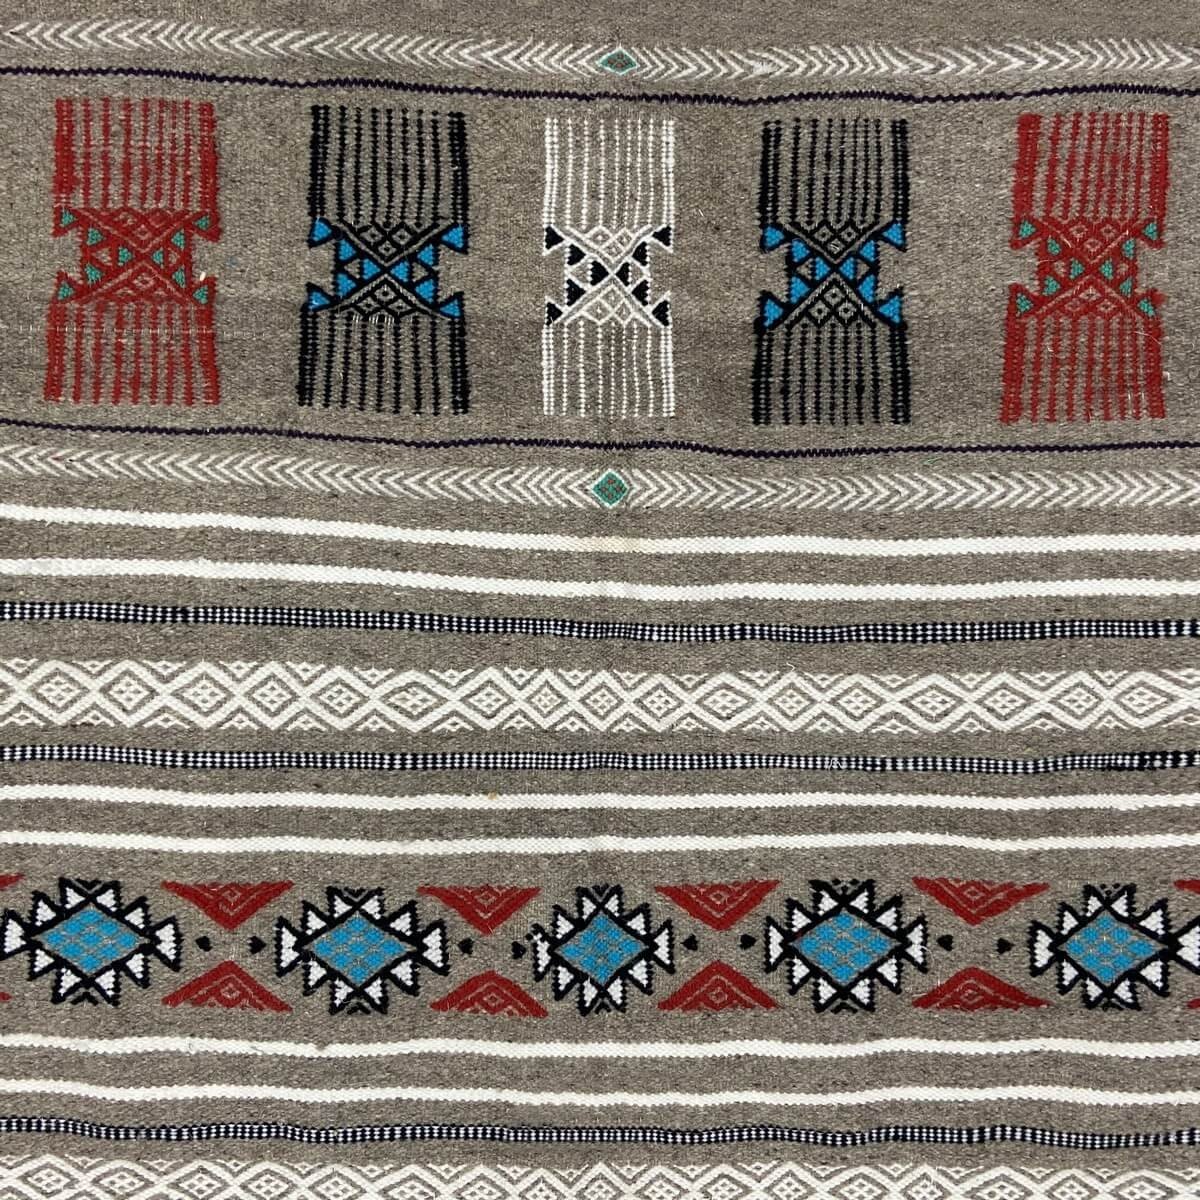 Tapis berbère Tapis Kilim Taief 106x200 Multicolore (Tissé main, Laine) Tapis kilim tunisien style tapis marocain. Tapis rectang